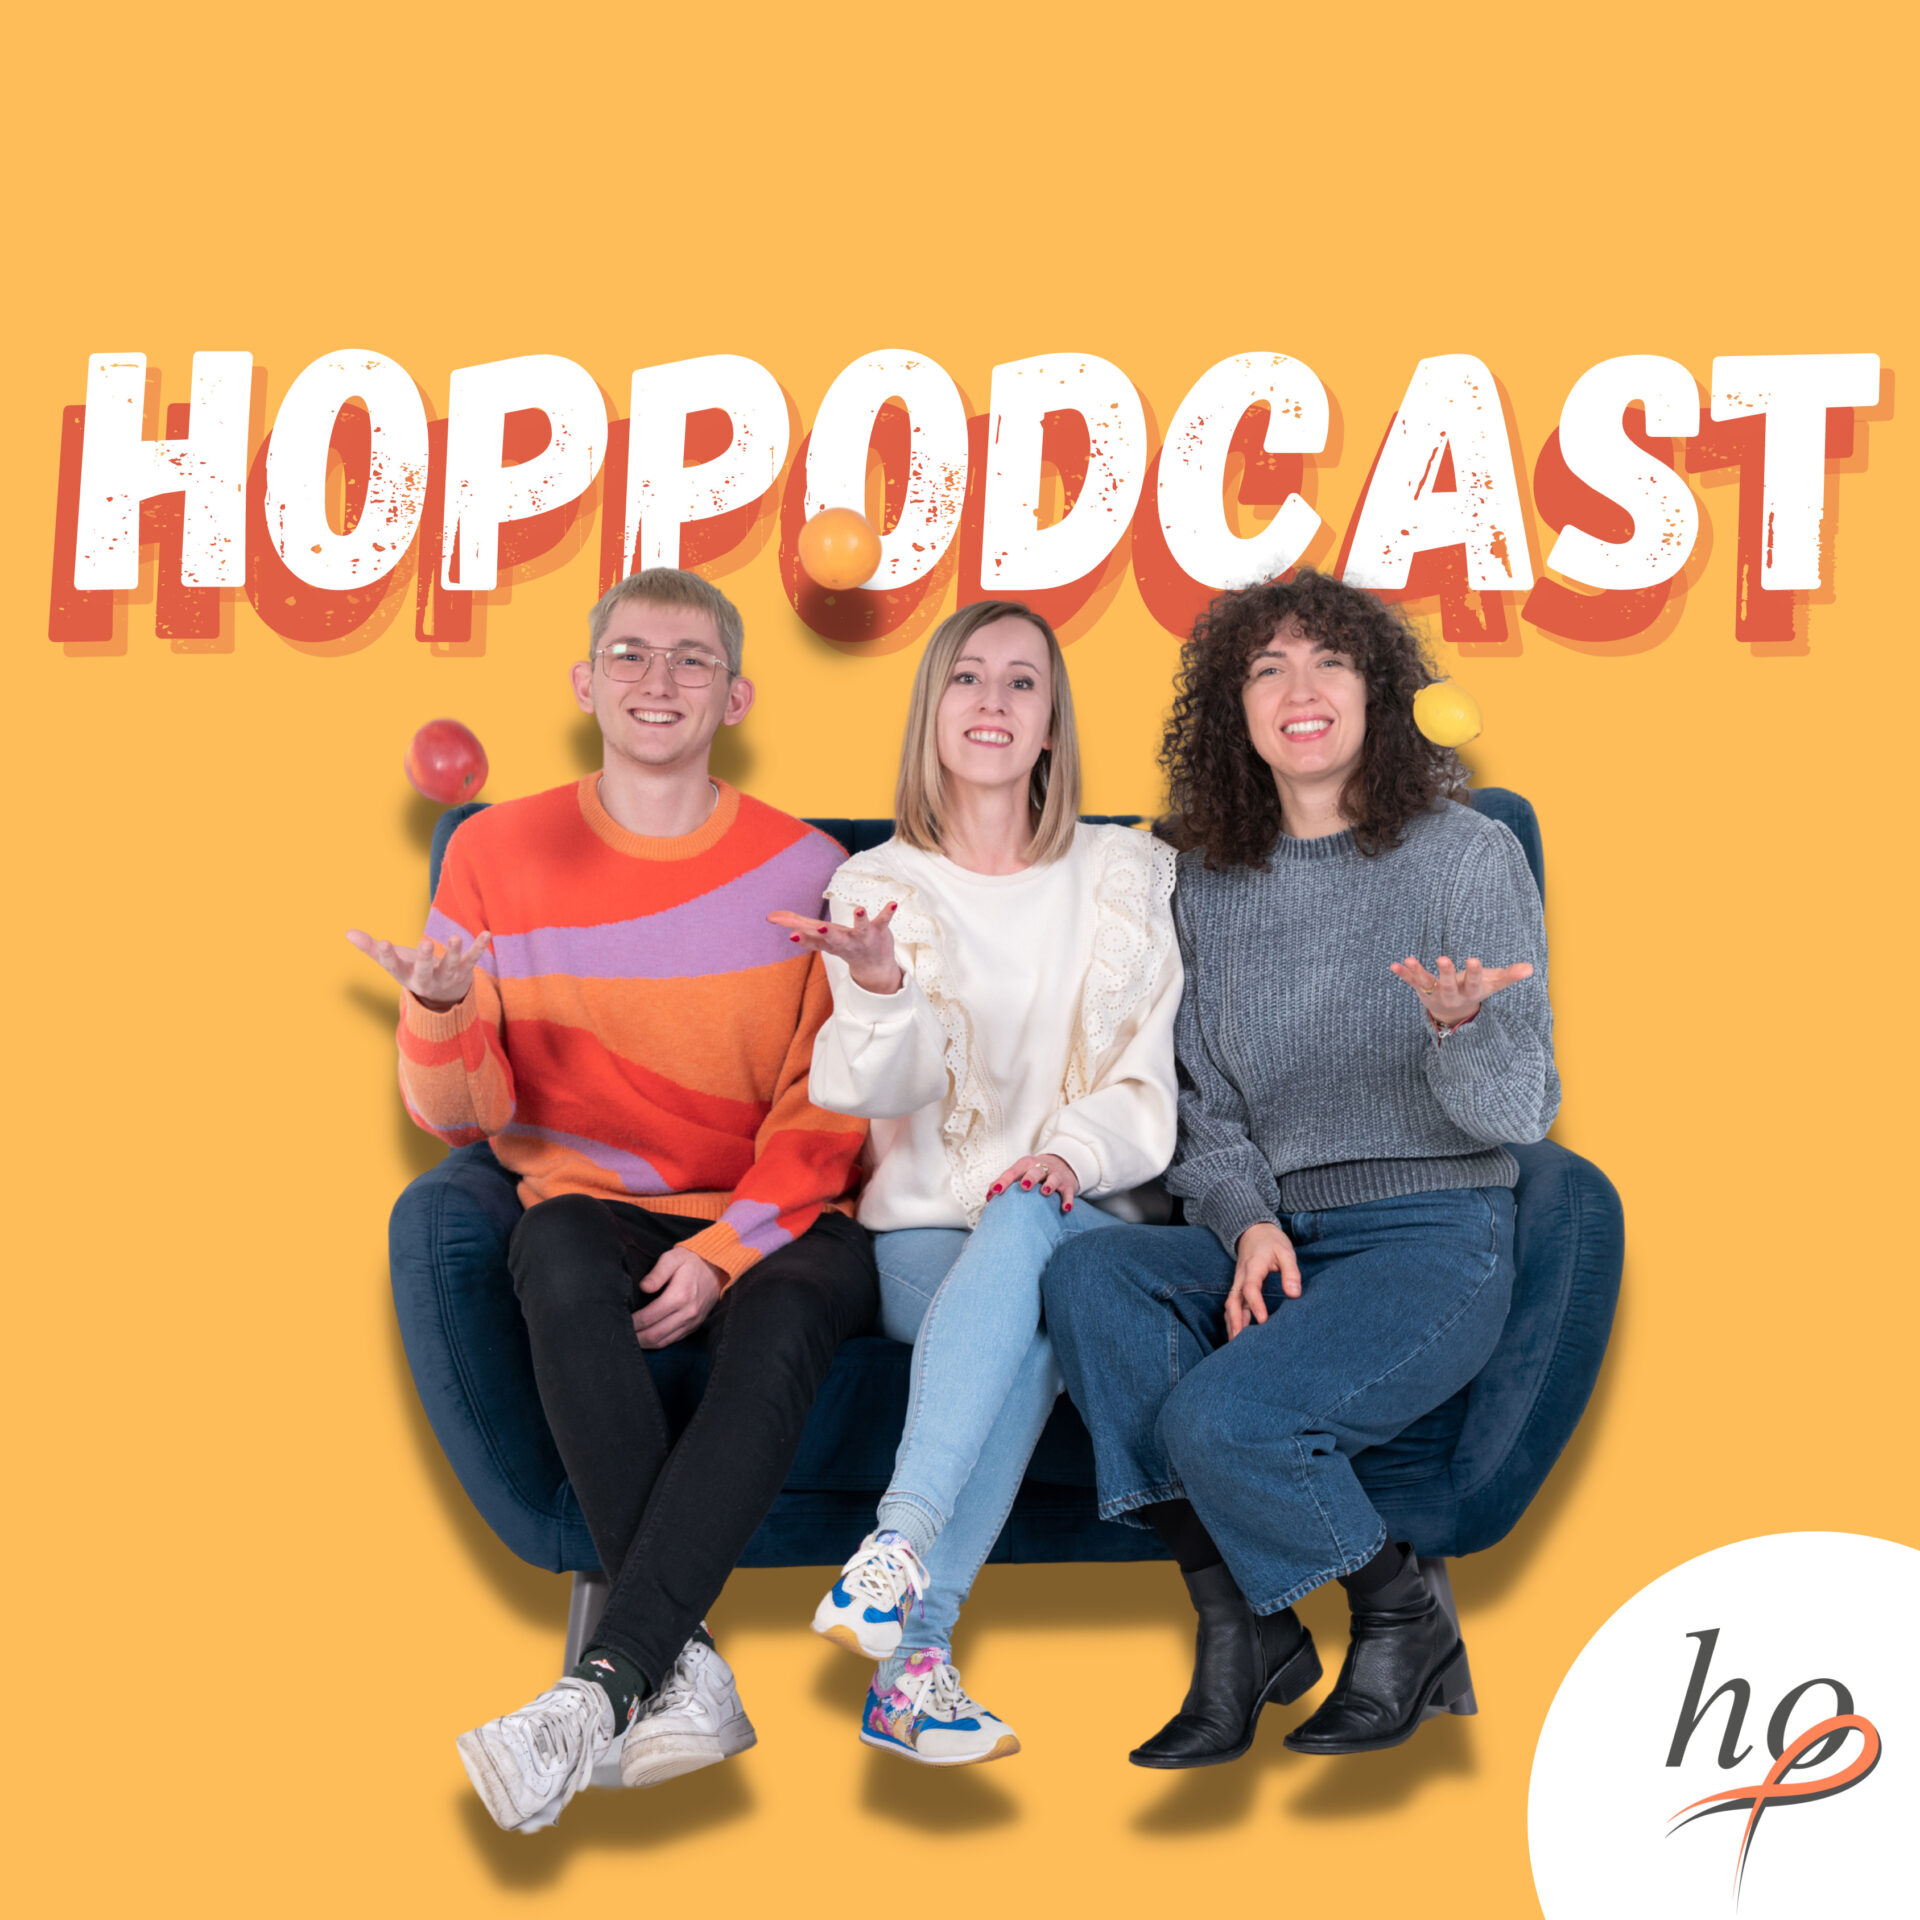 HOPPodcast